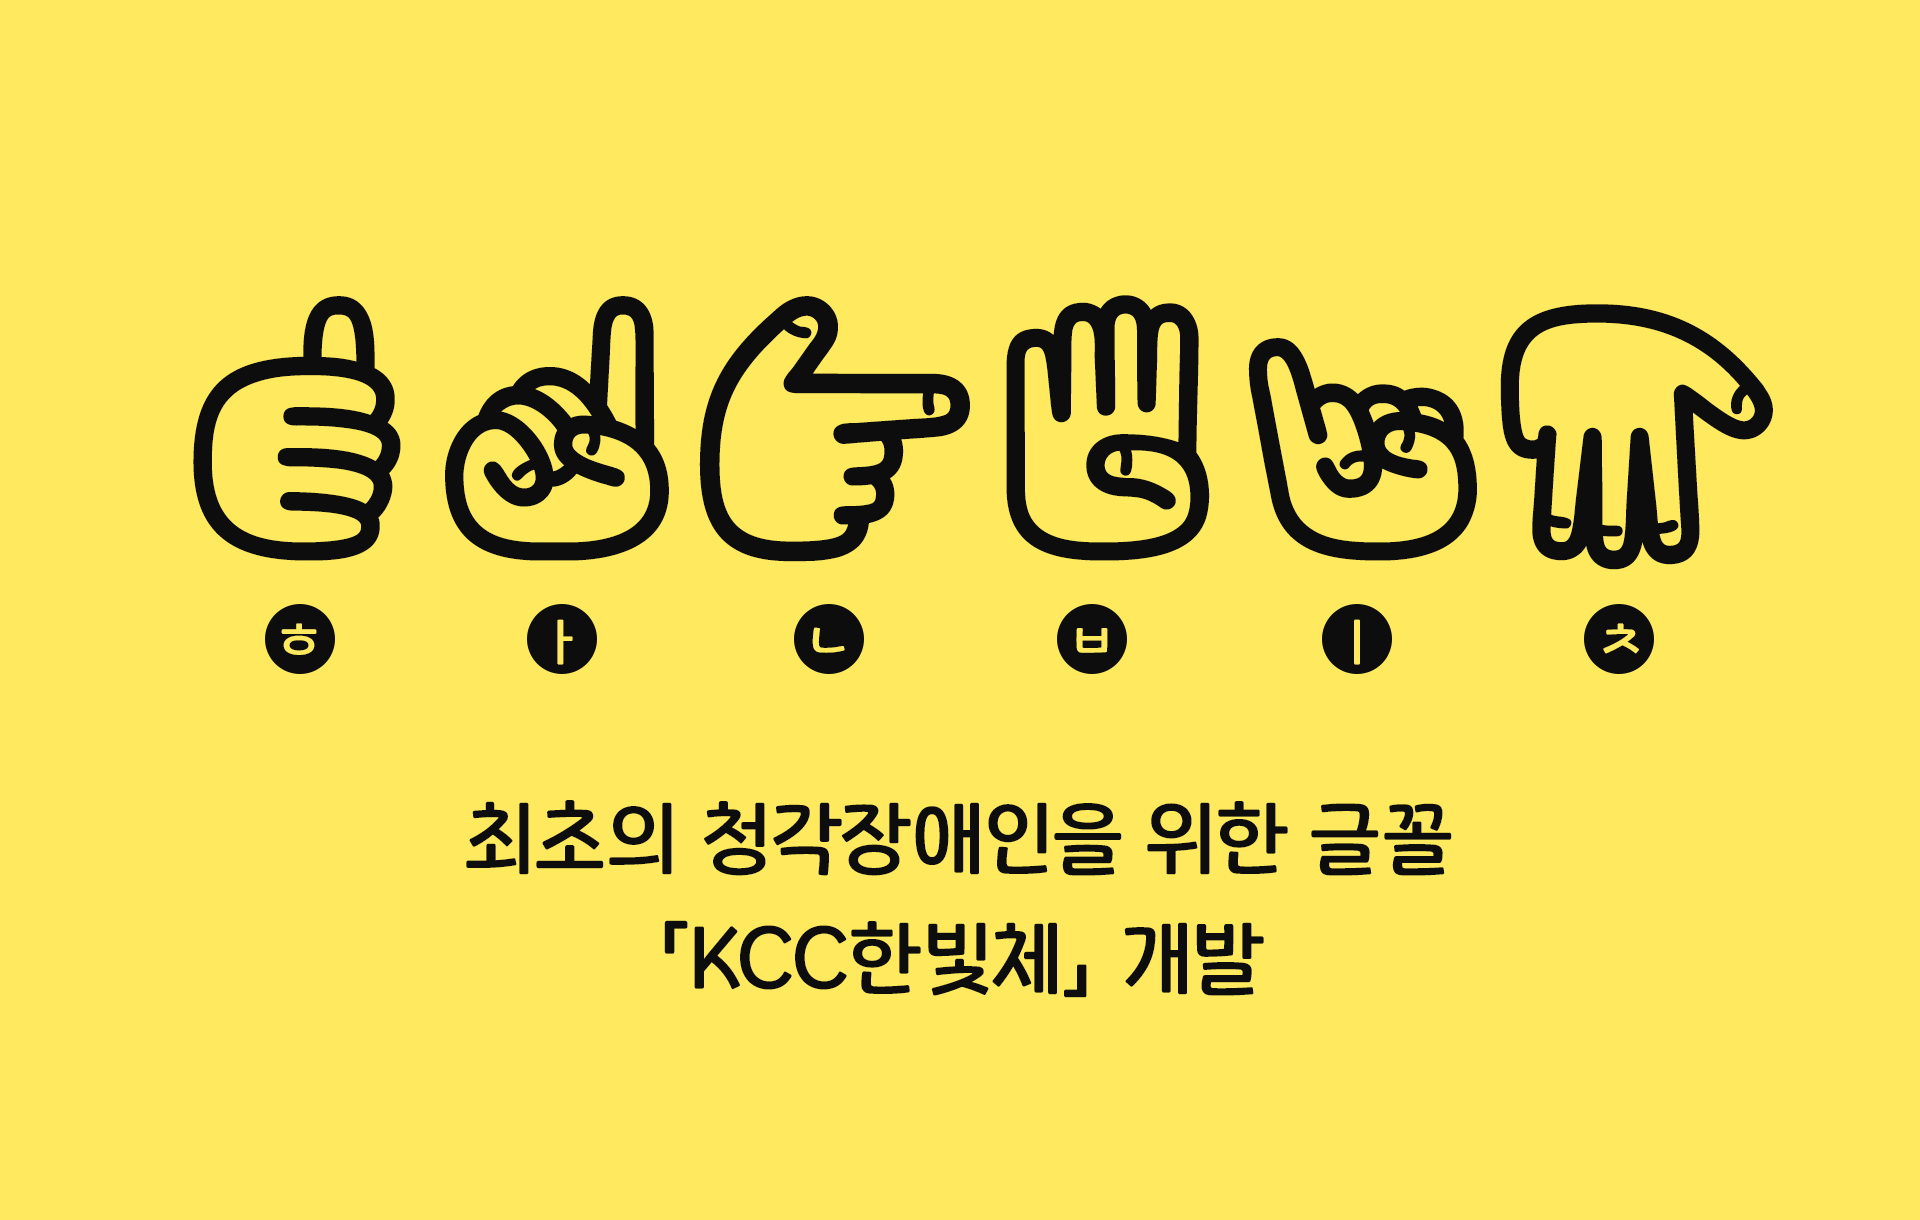 최초의 청각장애인을 위한 글꼴 KCC한빛체 개발